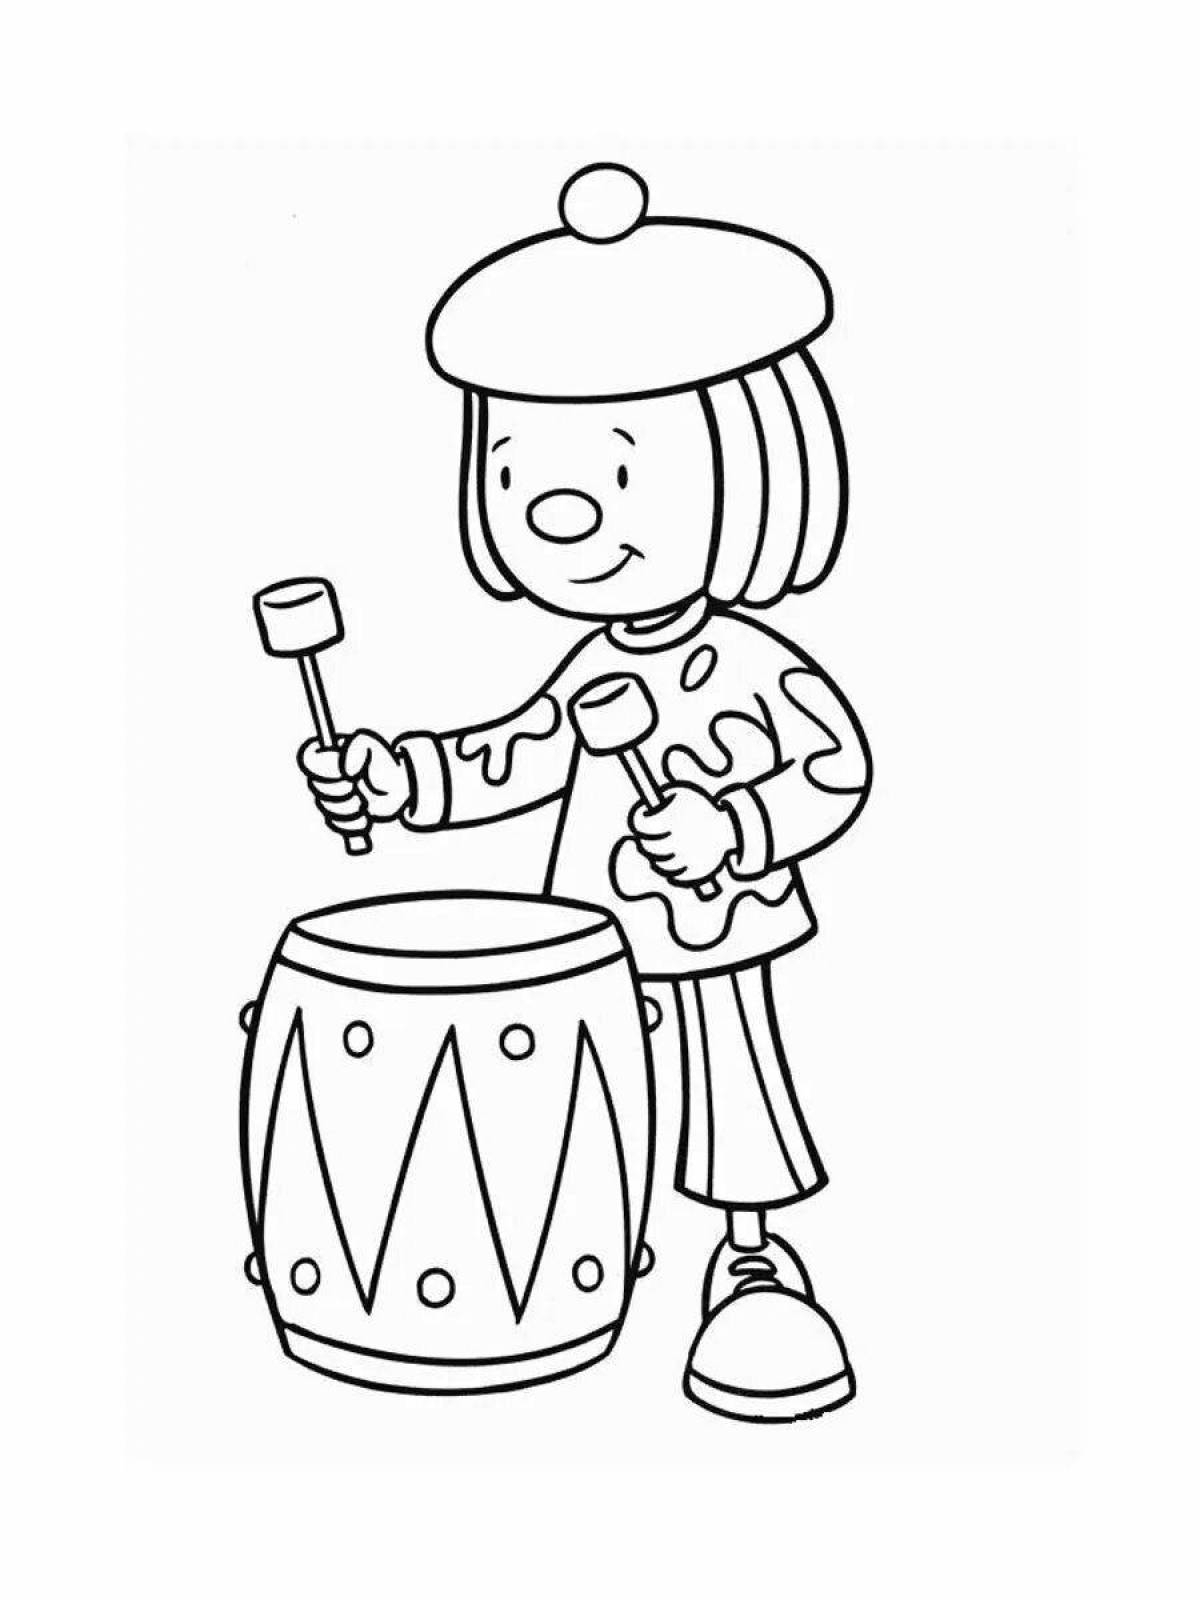 Яркая барабанная раскраска для детей 3-4 лет